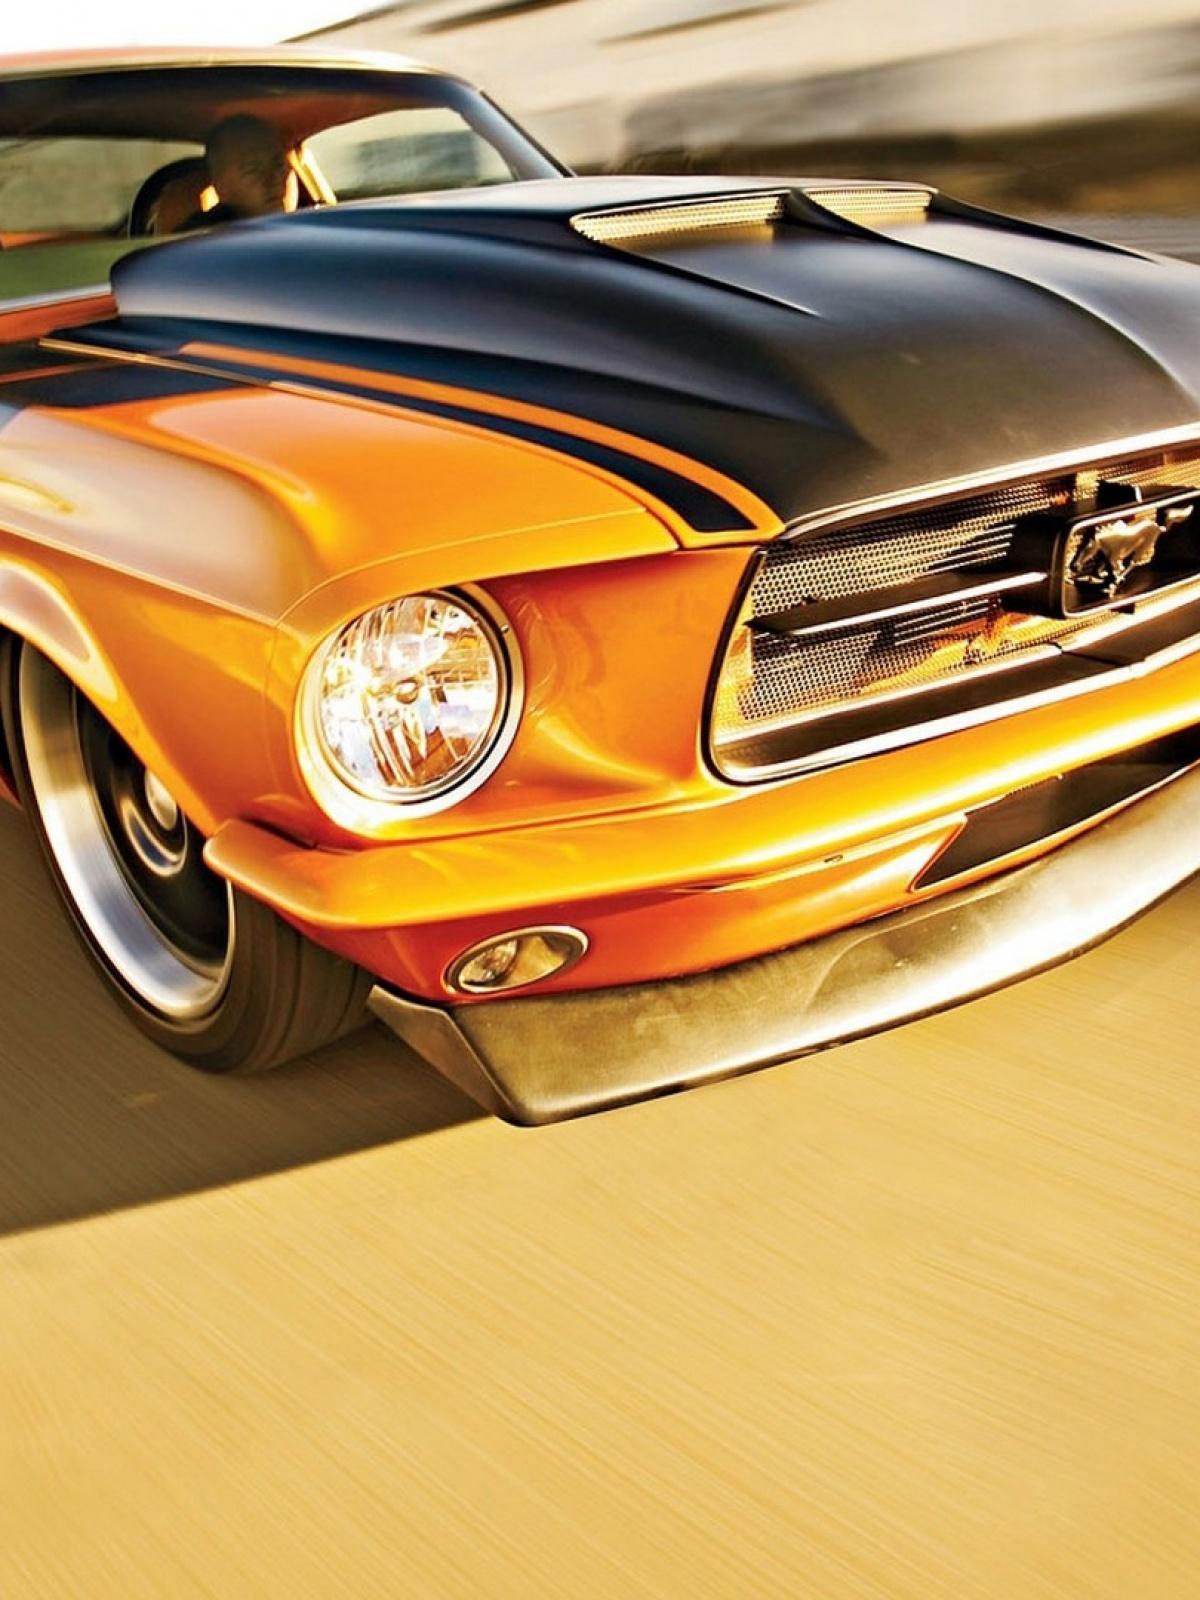 American Mustang Hd Wallpaper